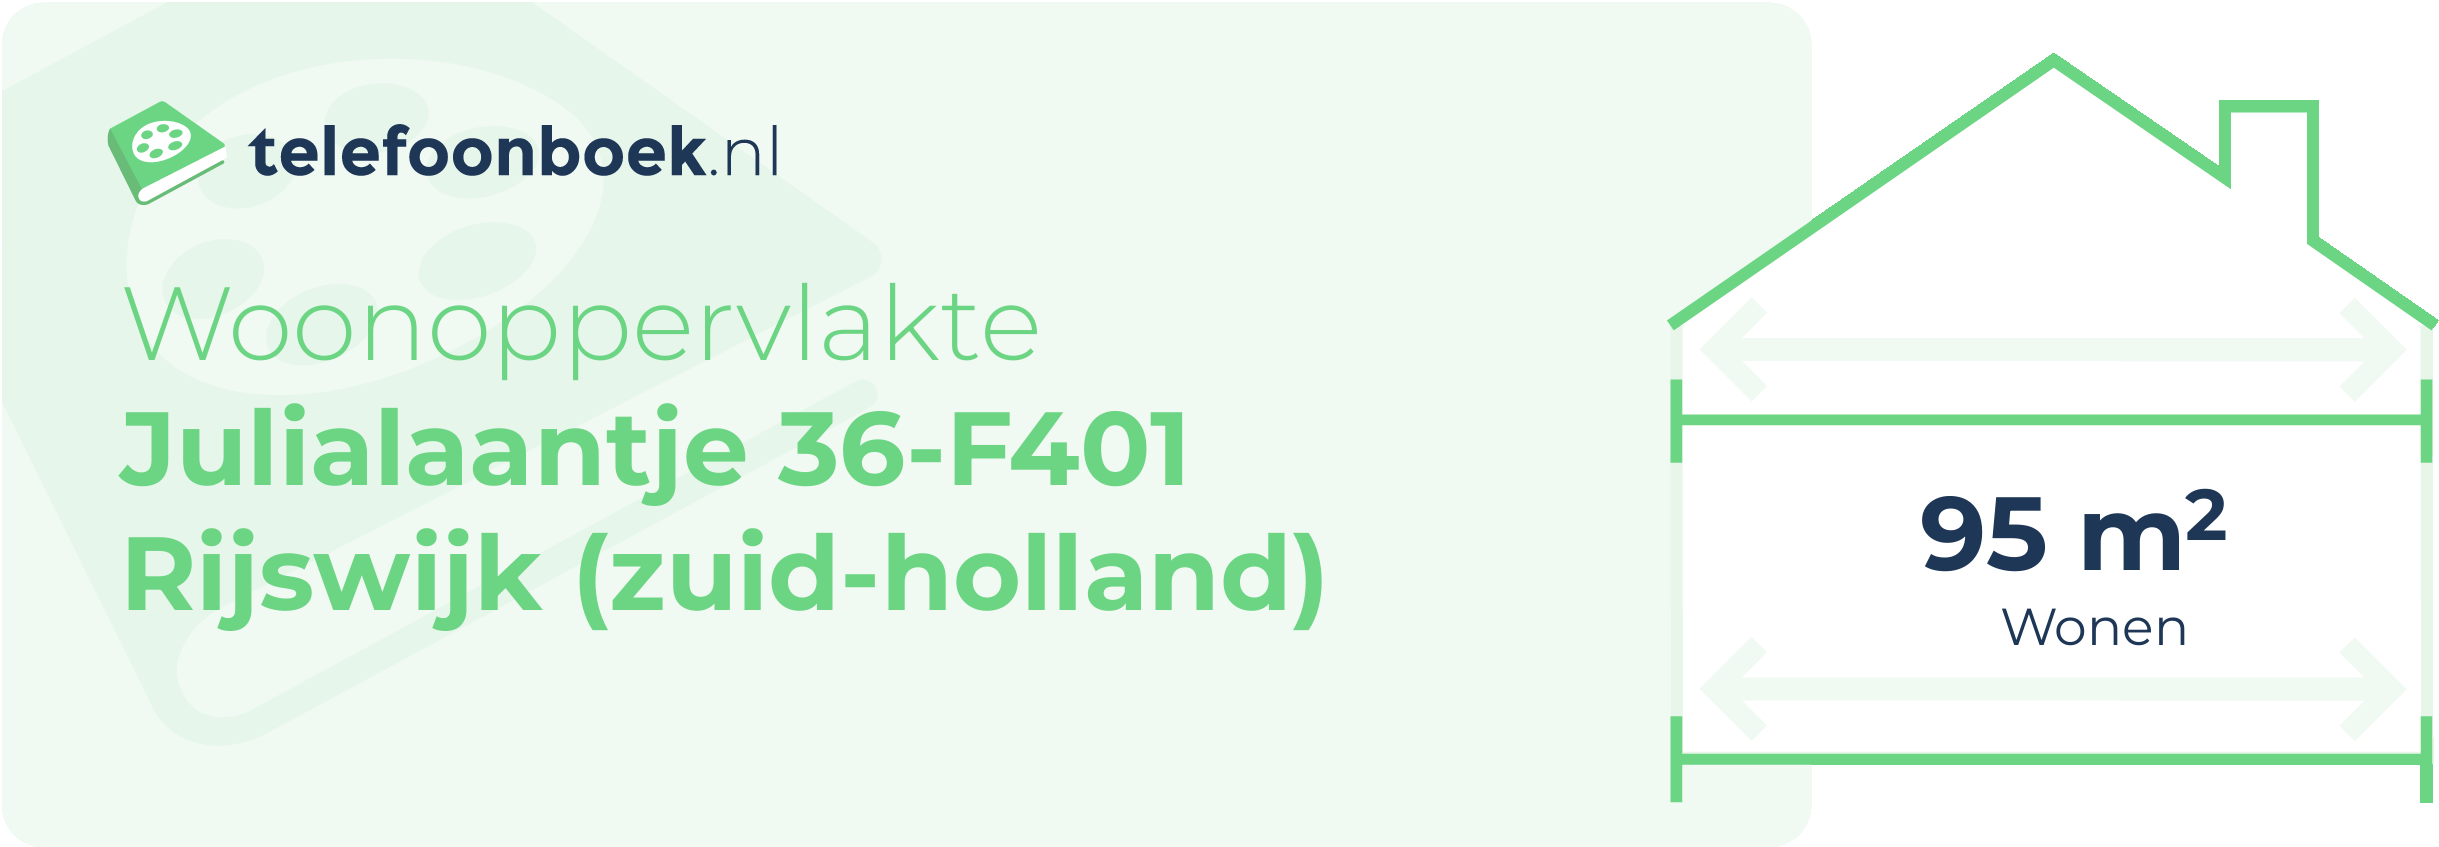 Woonoppervlakte Julialaantje 36-F401 Rijswijk (Zuid-Holland)